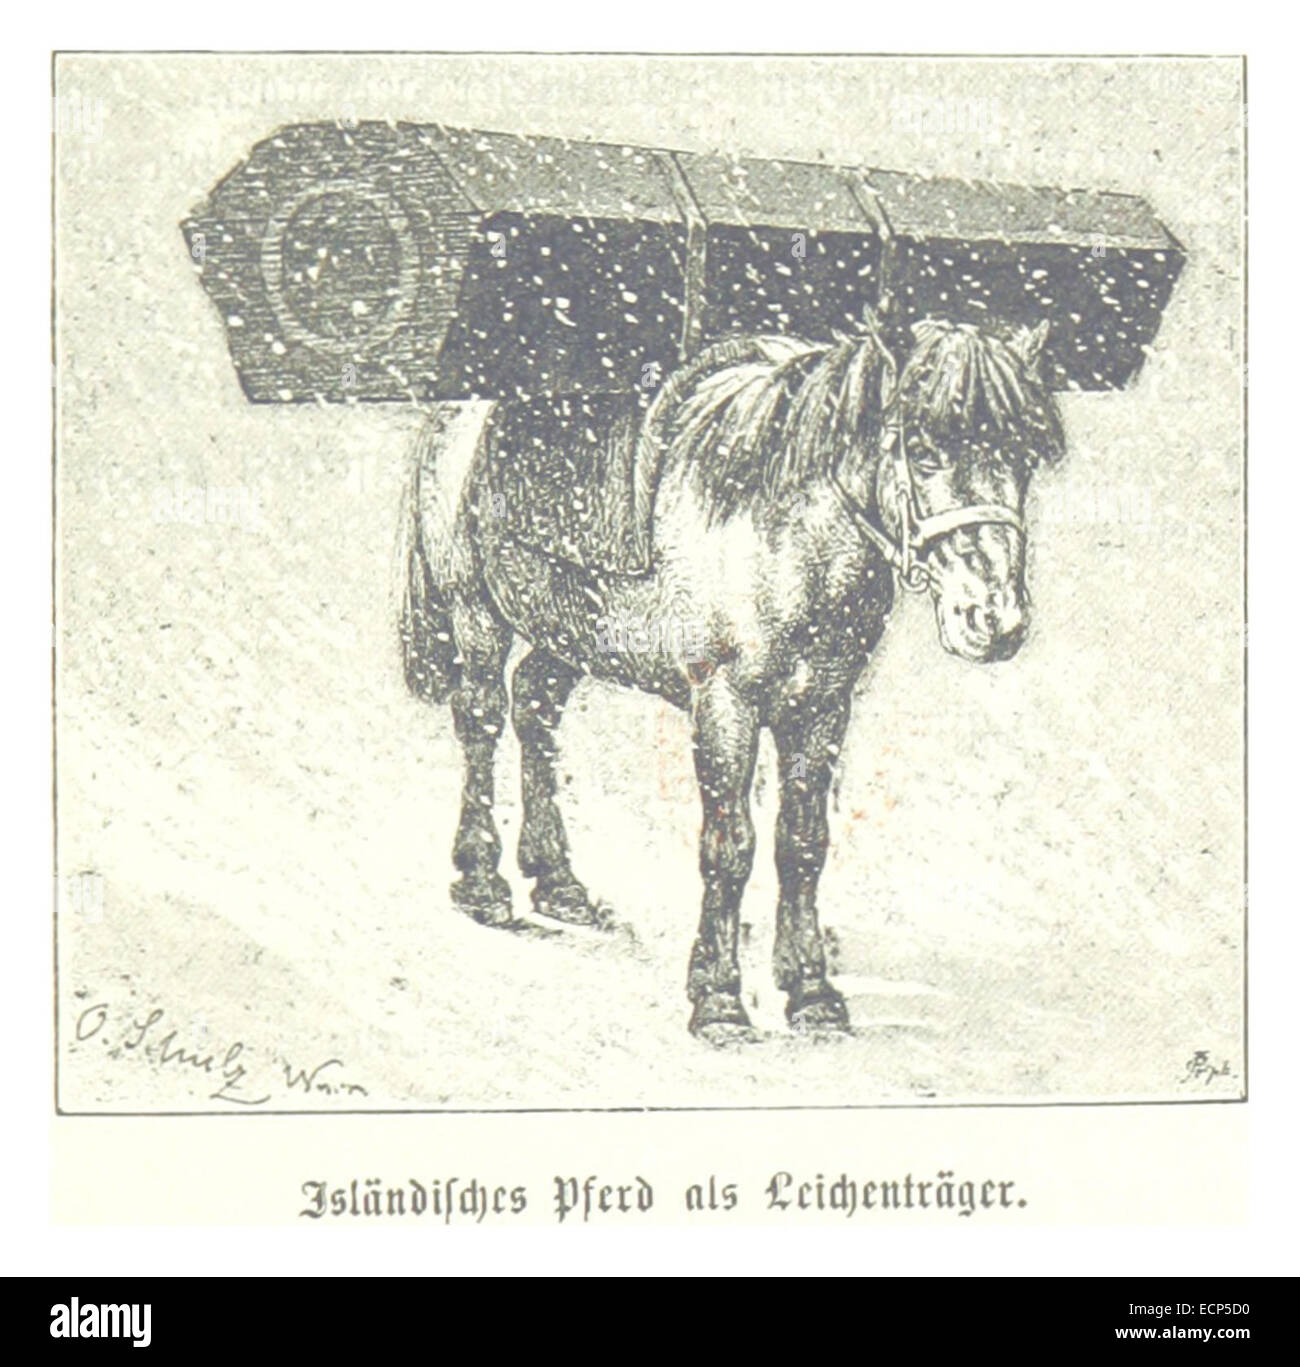 (Baumg1889) Islänisches Pferd als Leichenträger Stock Photo